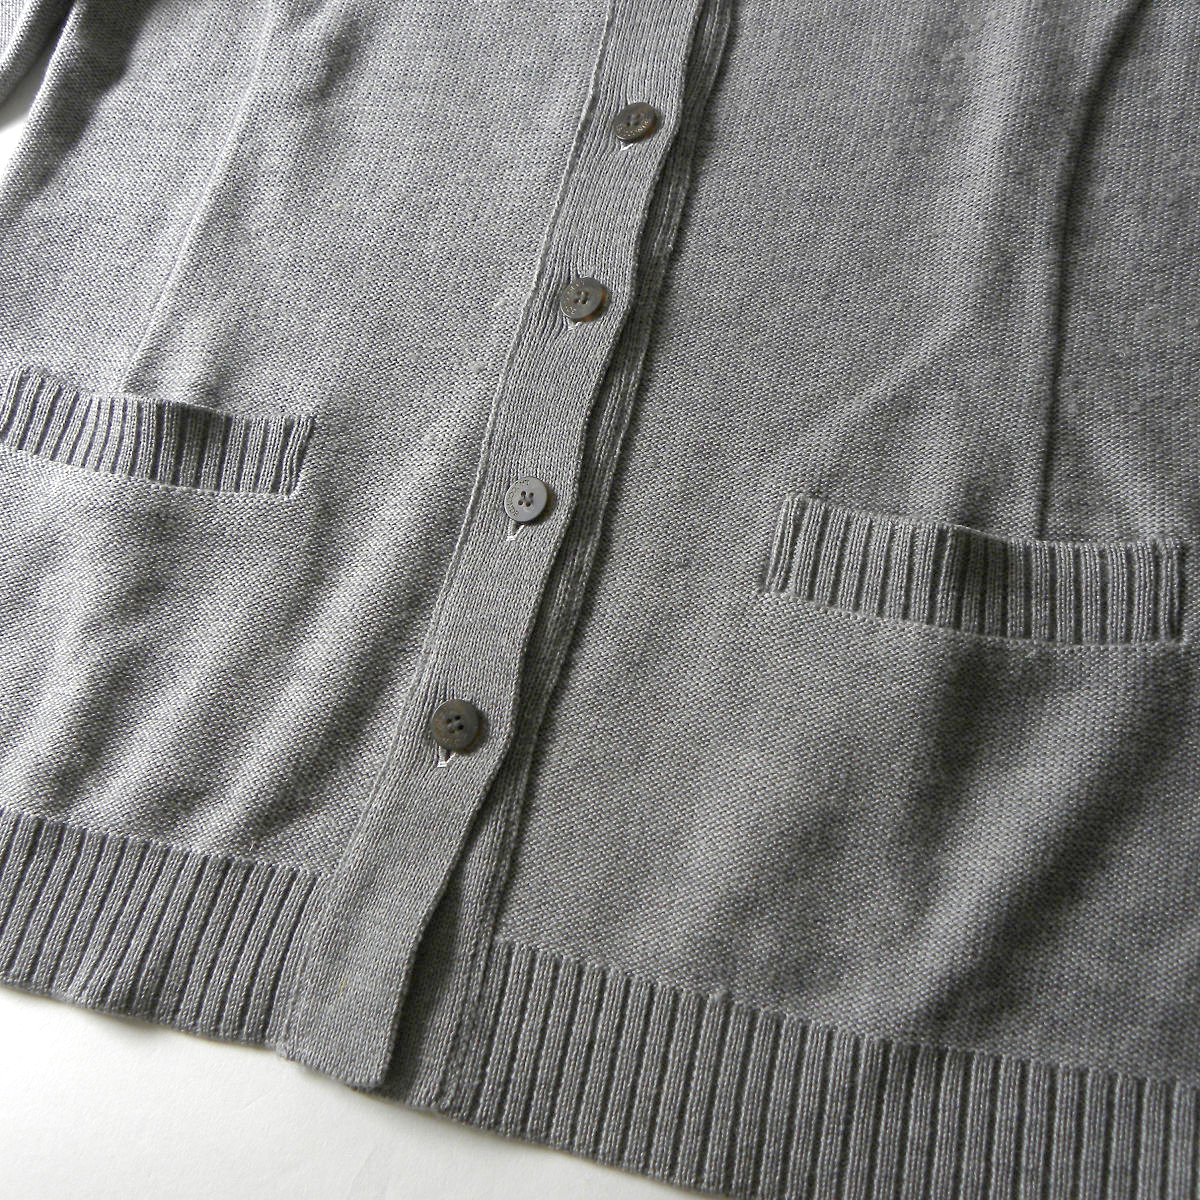 ラ ジョコンダ LA JOCONDE イタリア製糸使用 ウールニットジャケット 襟付きカーディガン 羽織り チクチク感軽減 グレー l1129-5_画像4